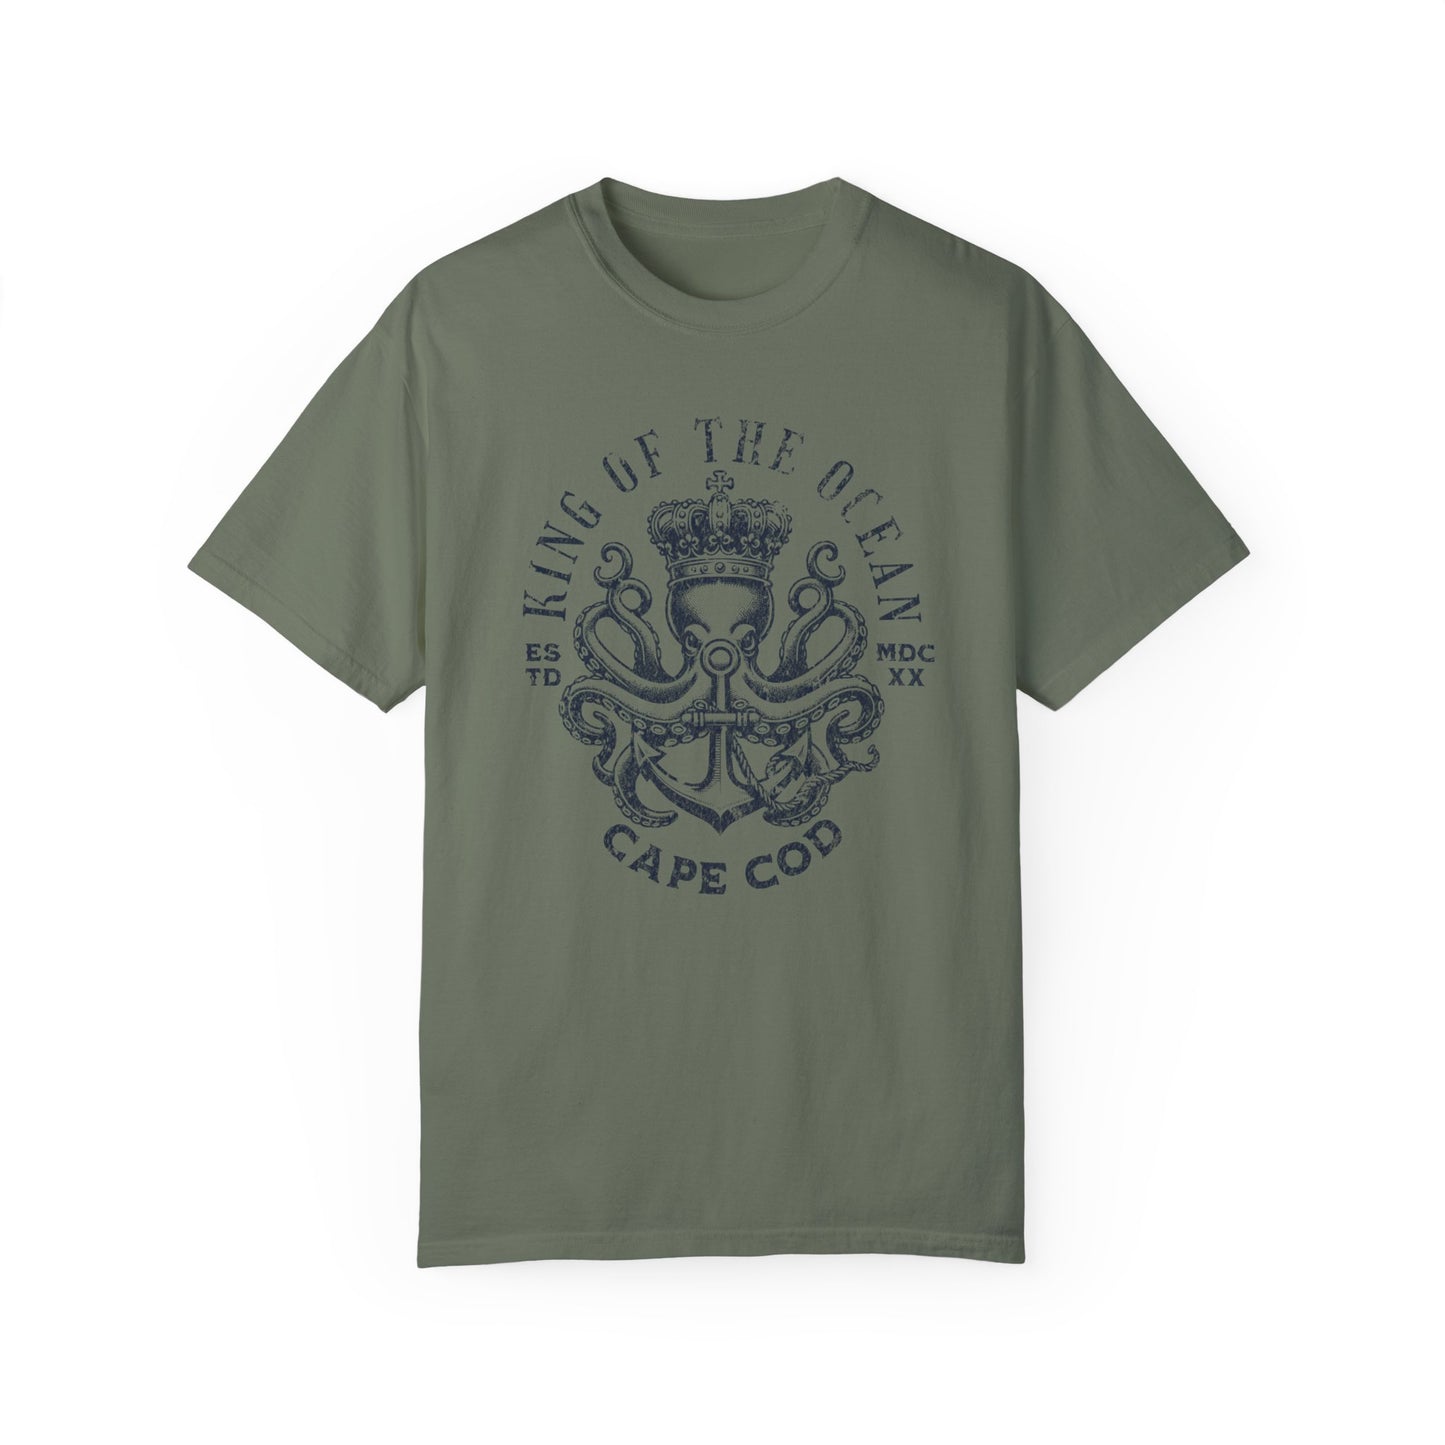 Cape Cod Octopus Comfort Colors T-Shirt